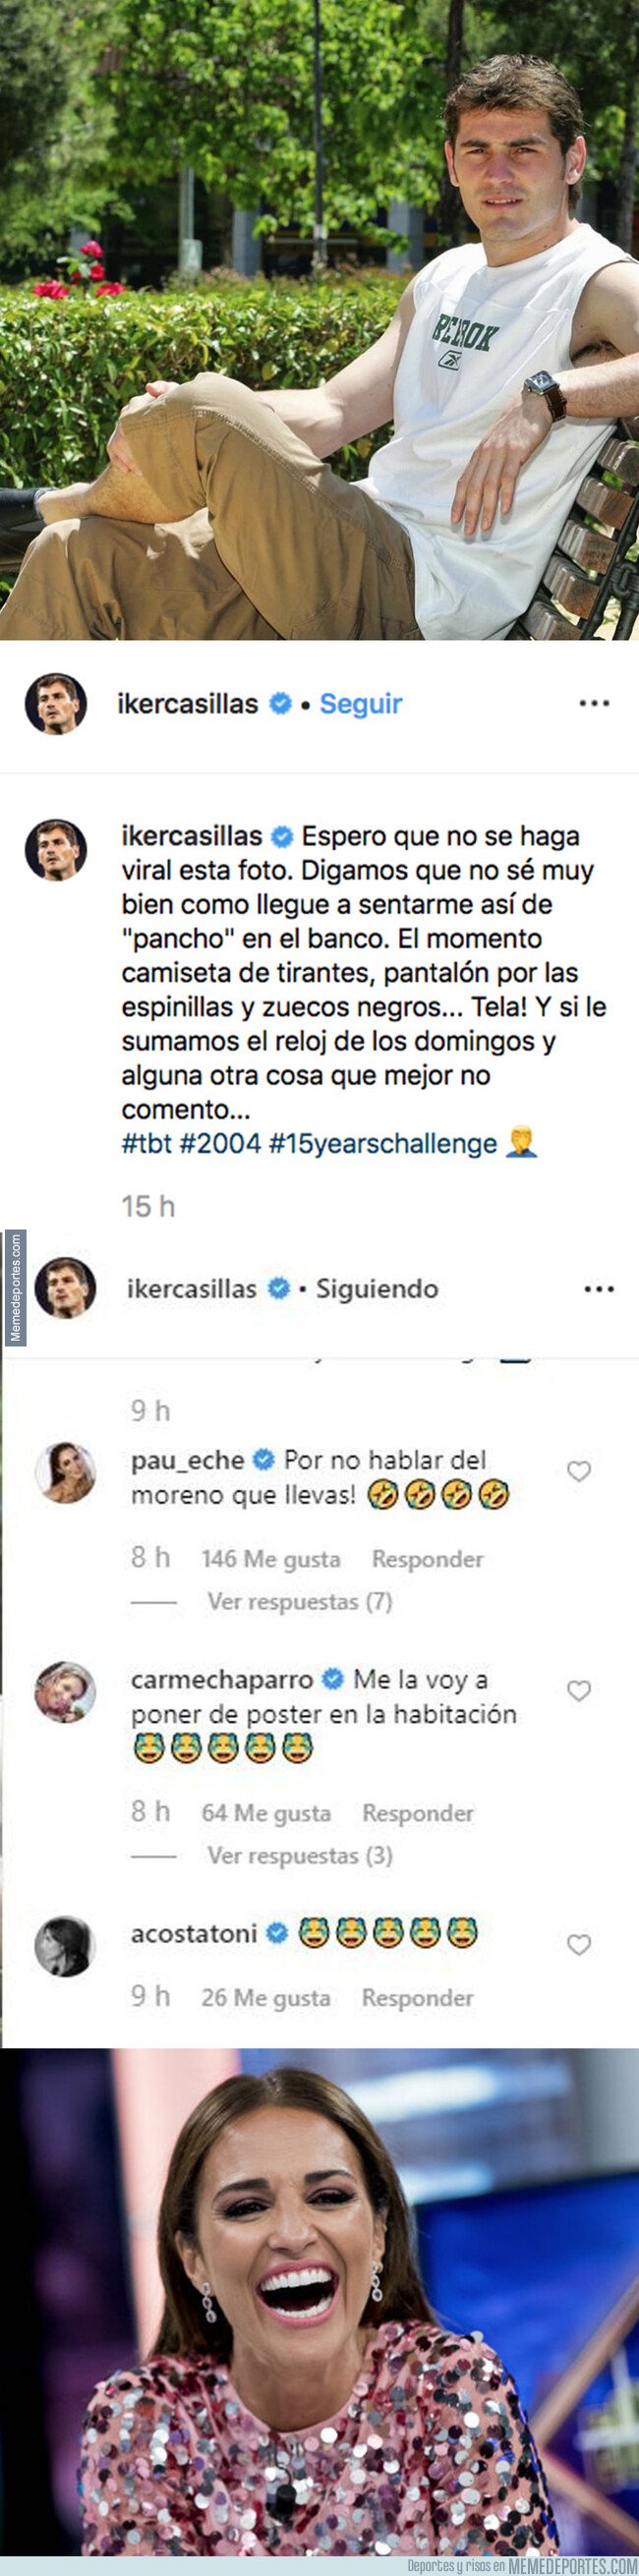 1084017 - Paula Echevarría trolea a Casillas poniéndole este comentario a una foto de Casillas de hace 15 años